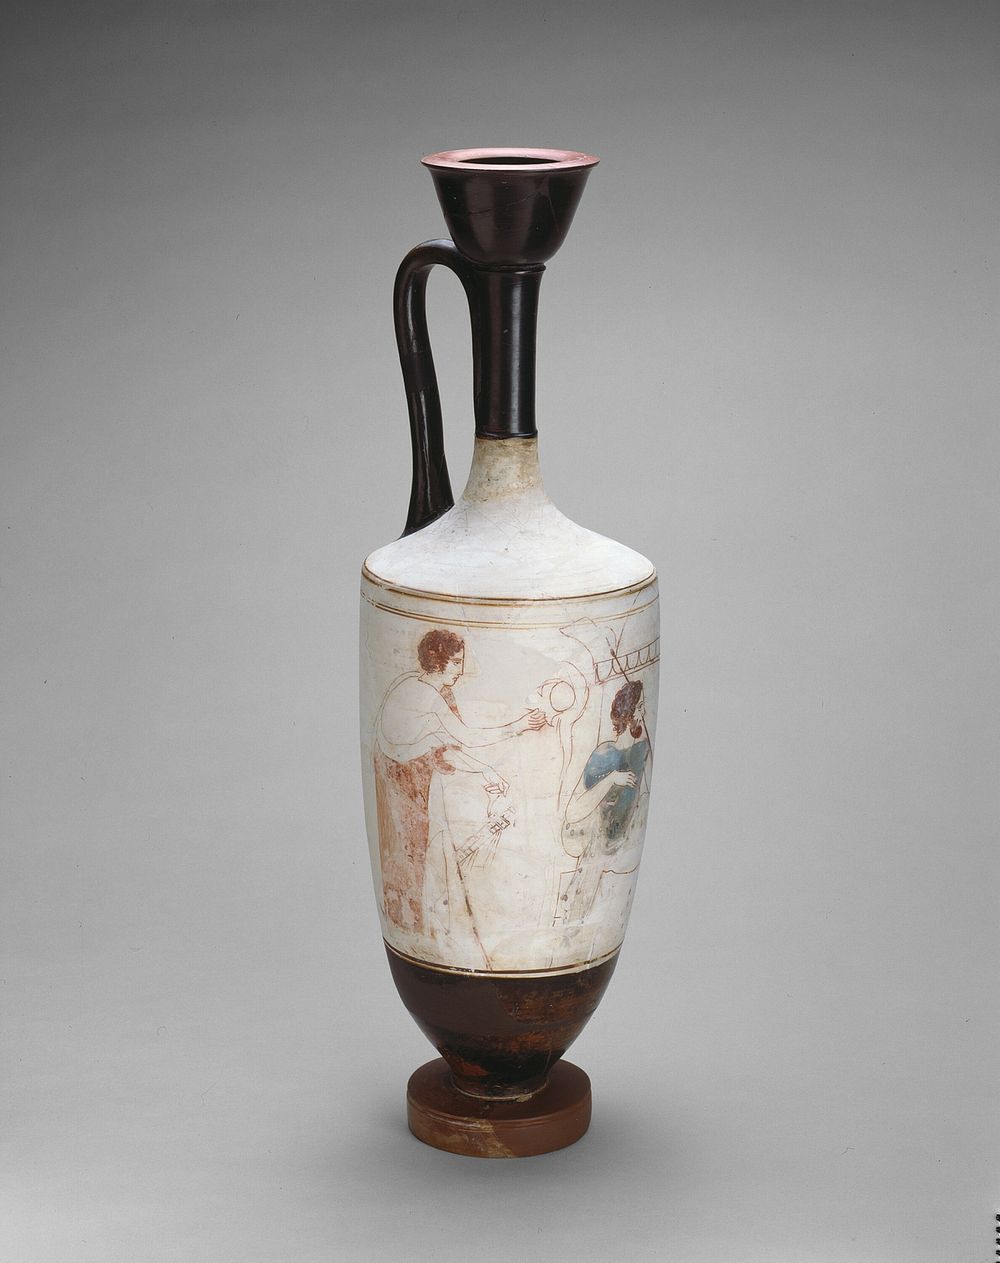 Lekythos (Oil Jar) by Ancient Greek